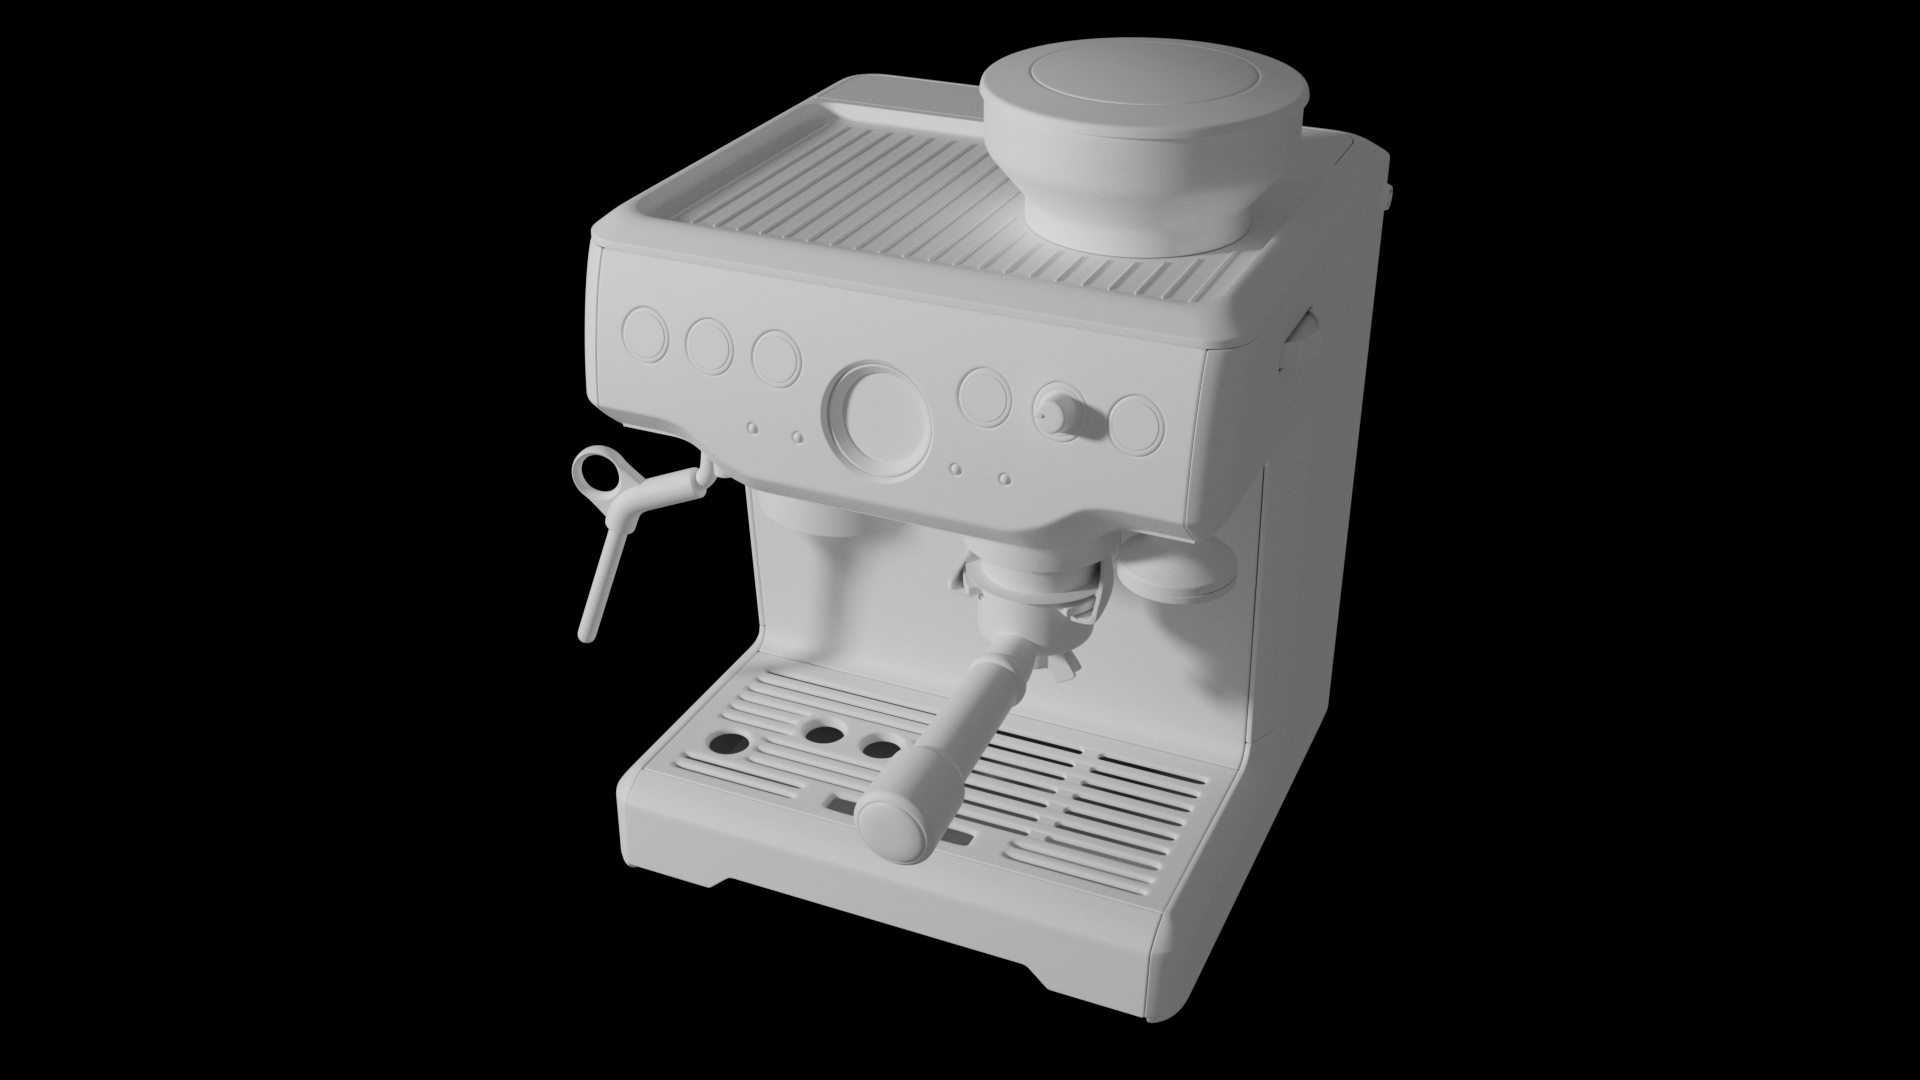 半自动咖啡机工业设计